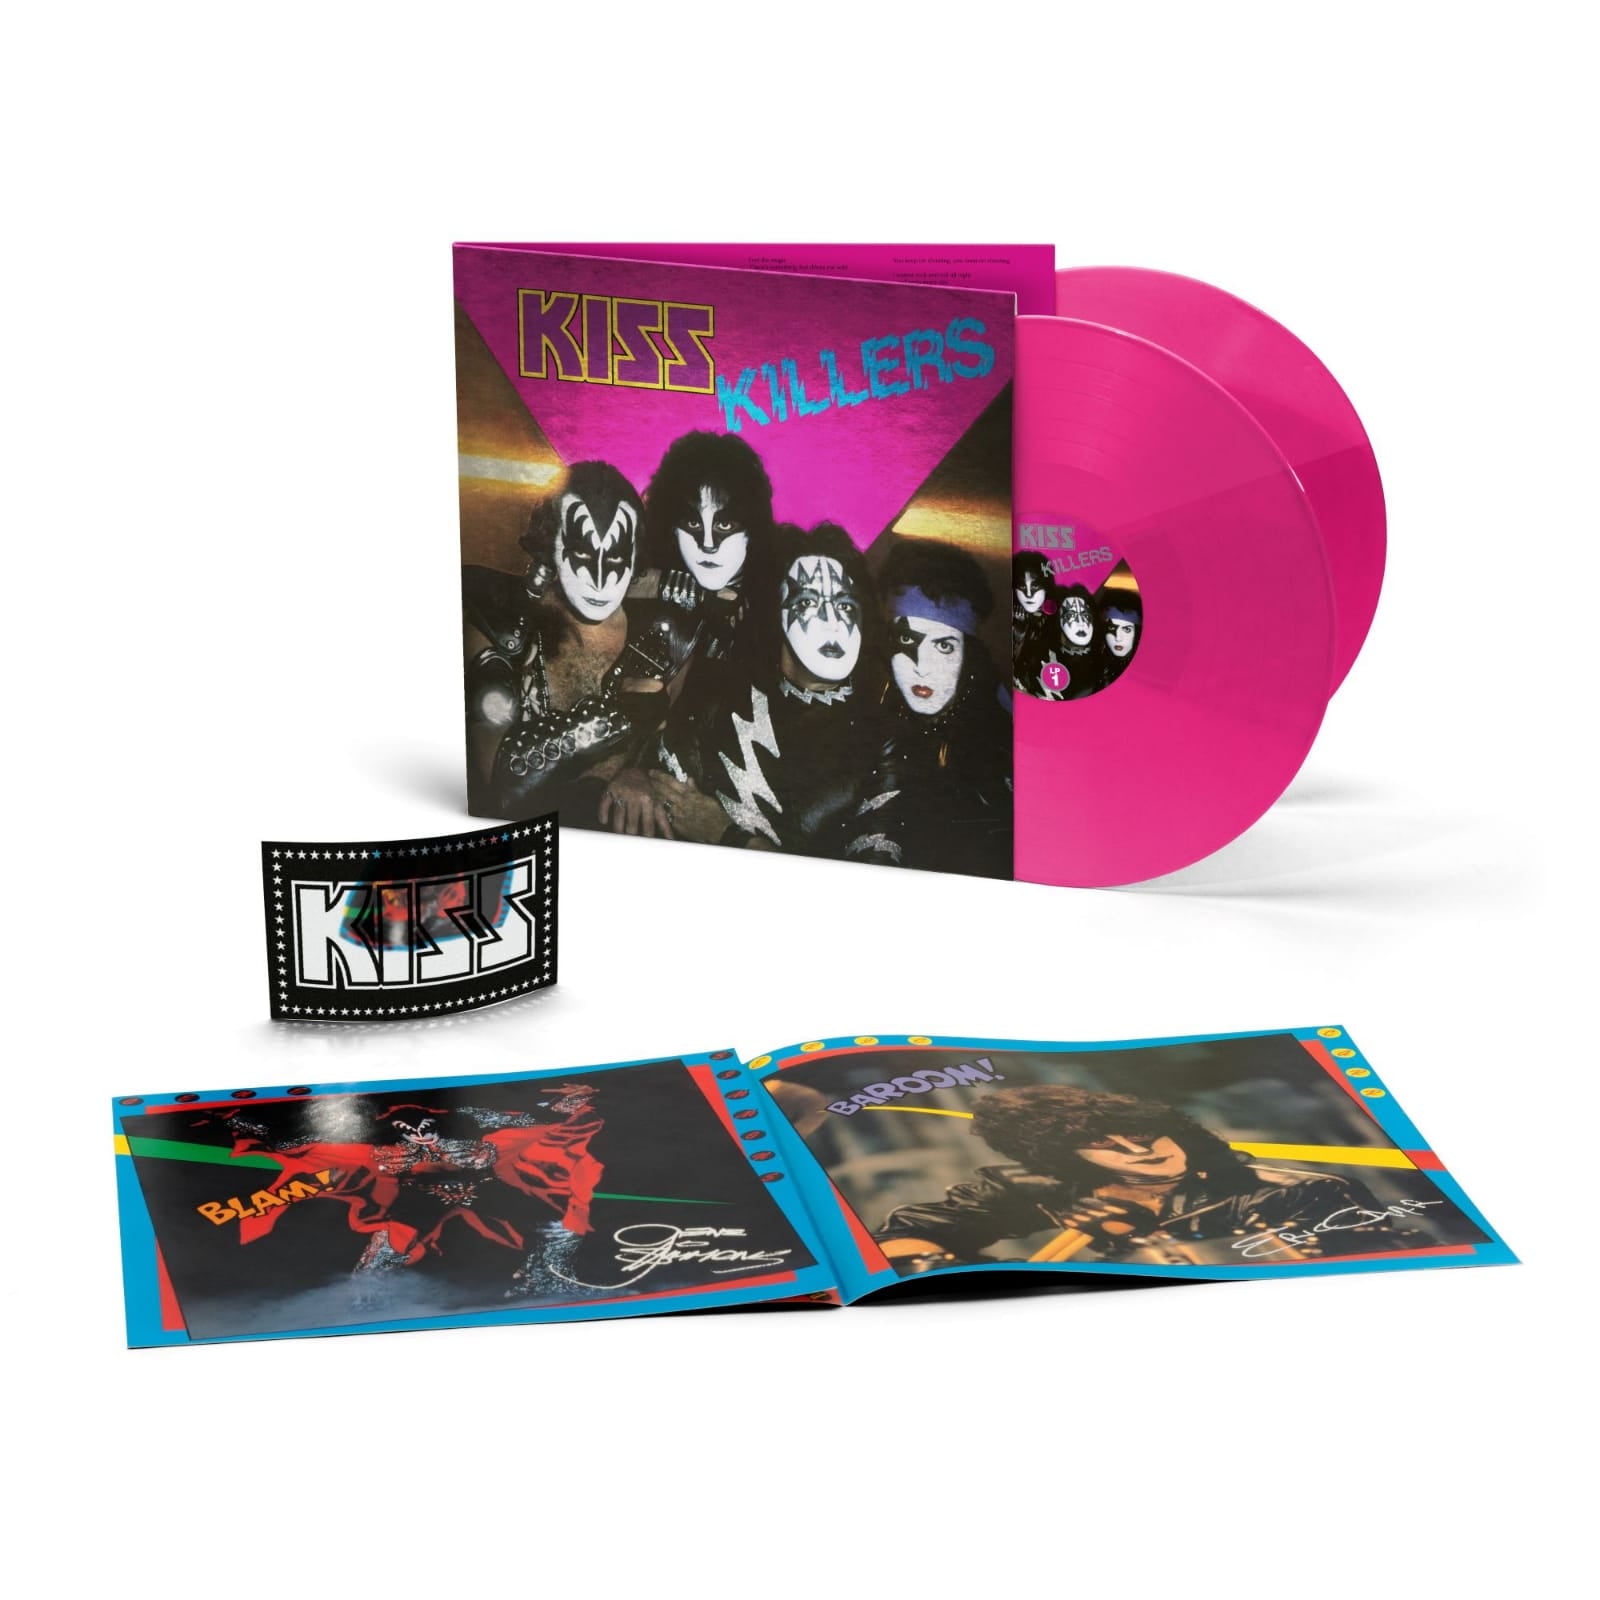 Kiss album Killers in zeer gelimiteerde oplage op Pink Vinyl